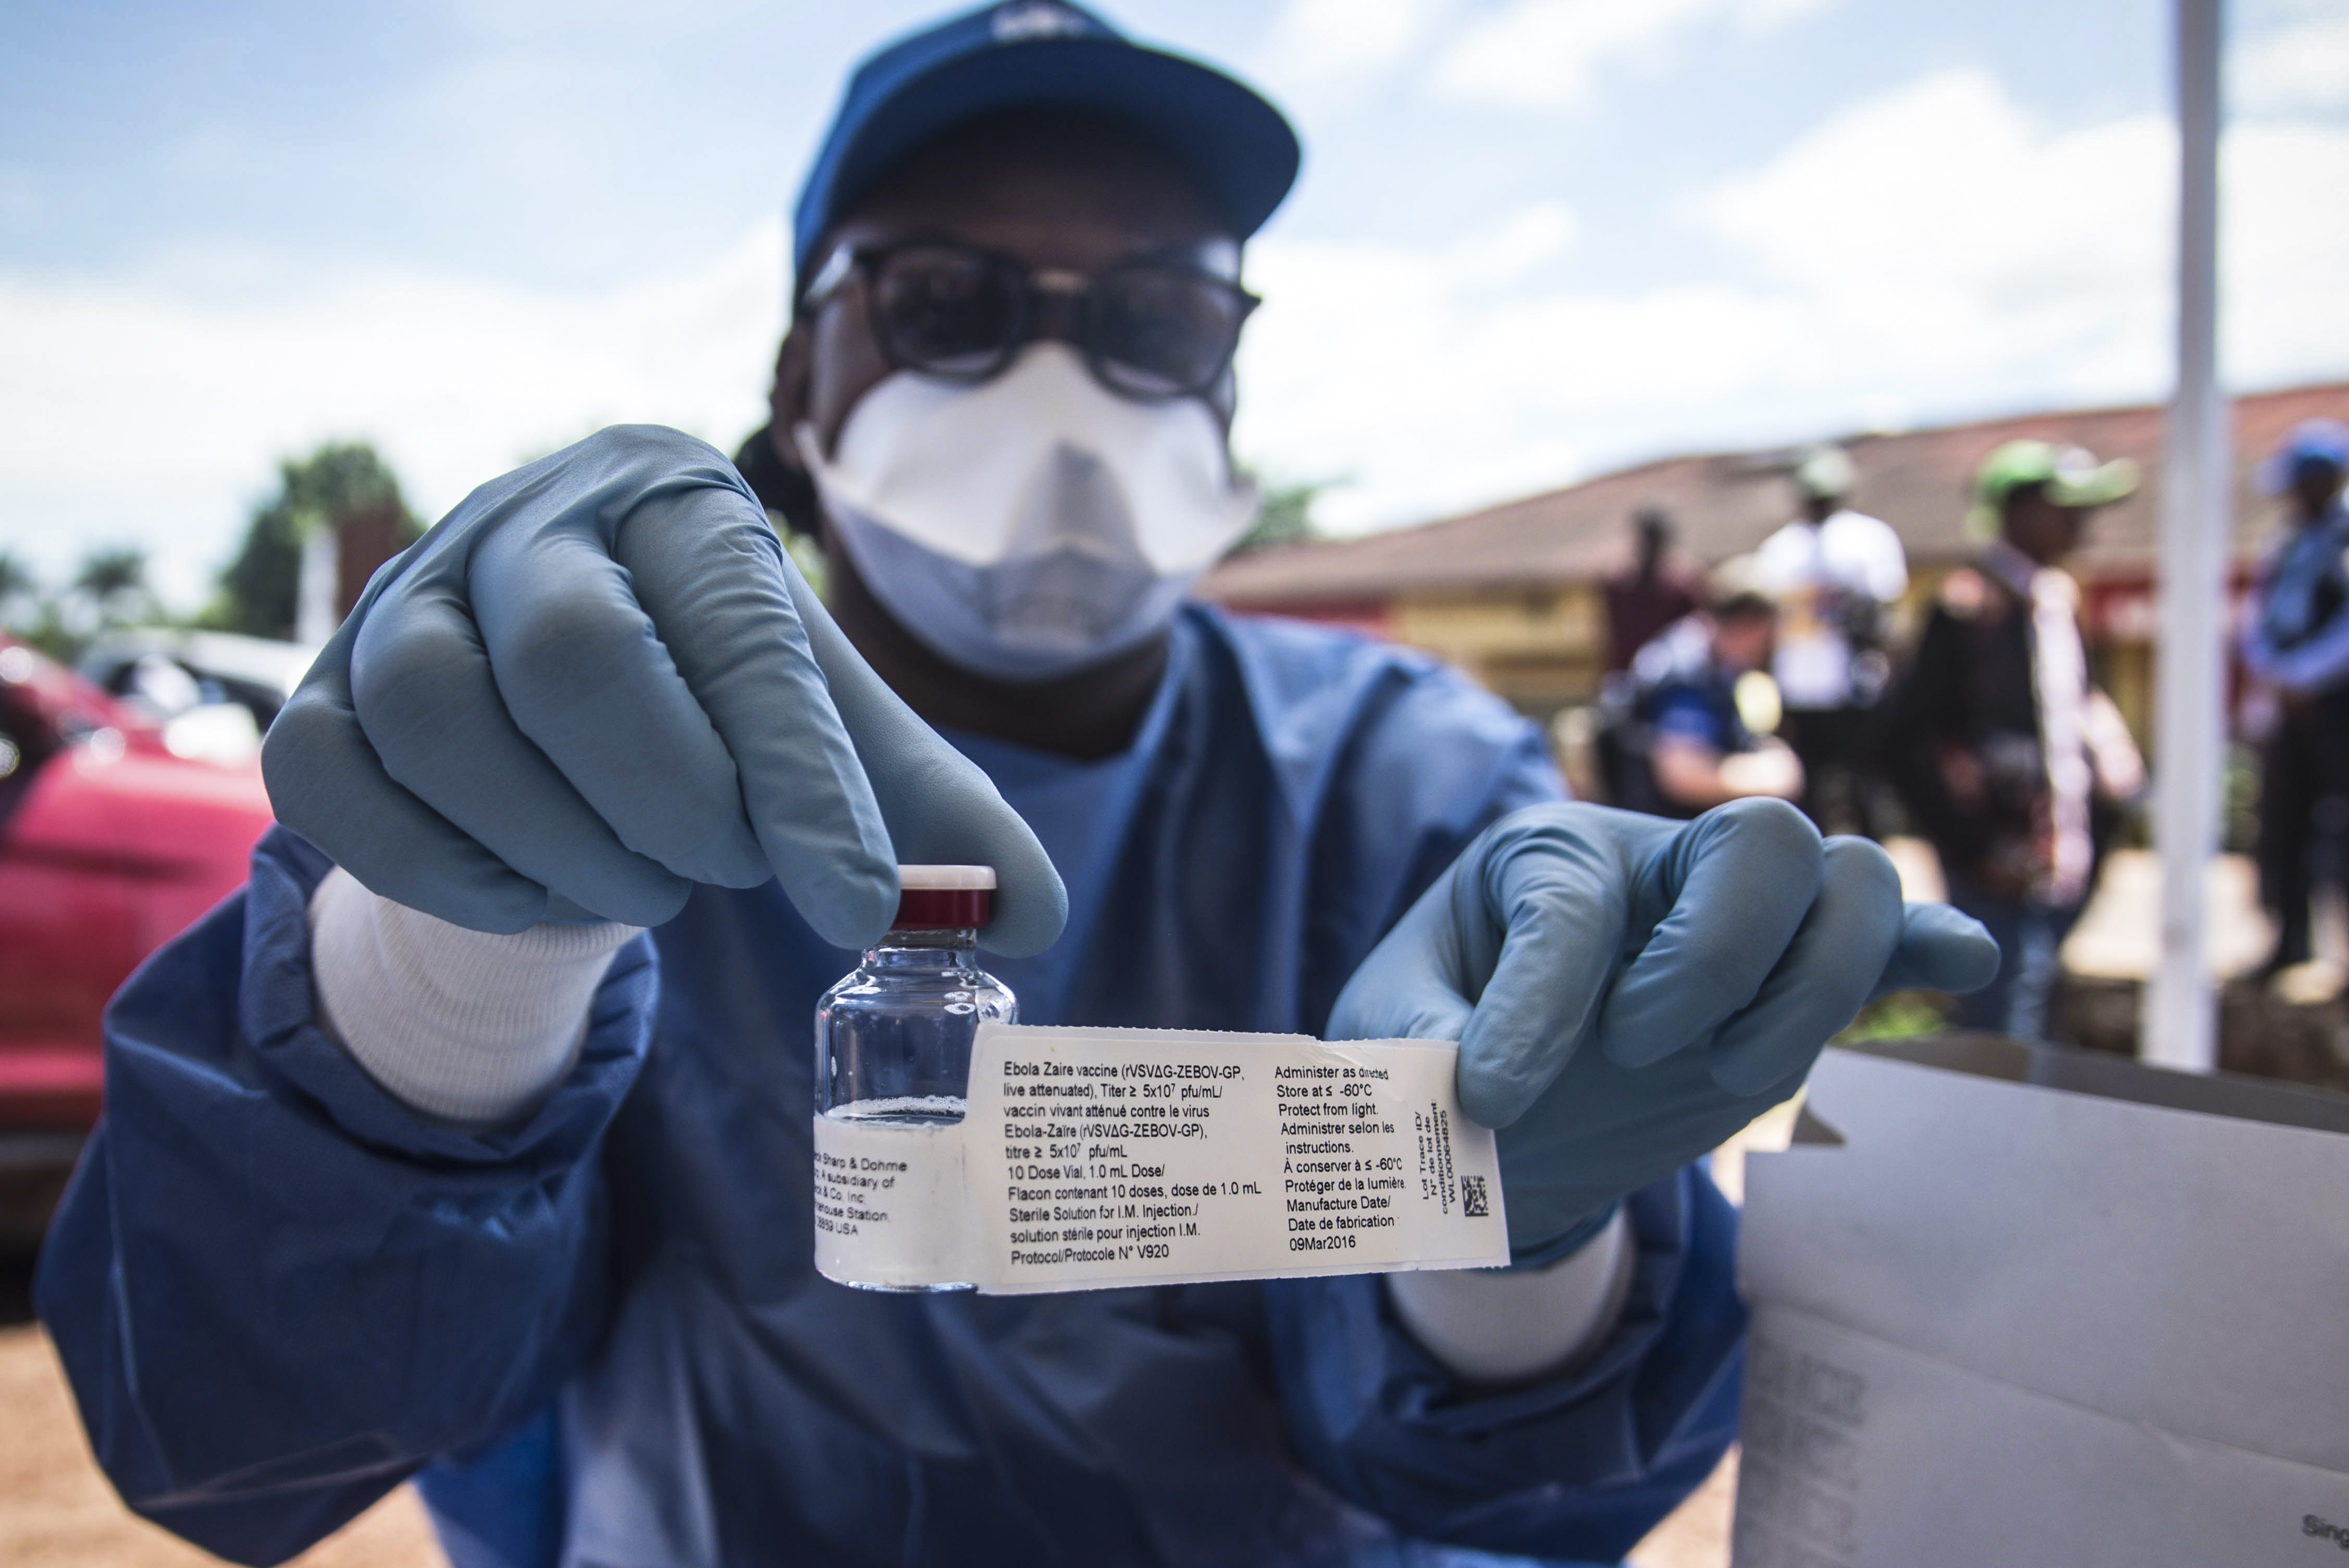 Buenas noticias: Virólogo declara que el undécimo brote de ébola en Congo “está bajo control”